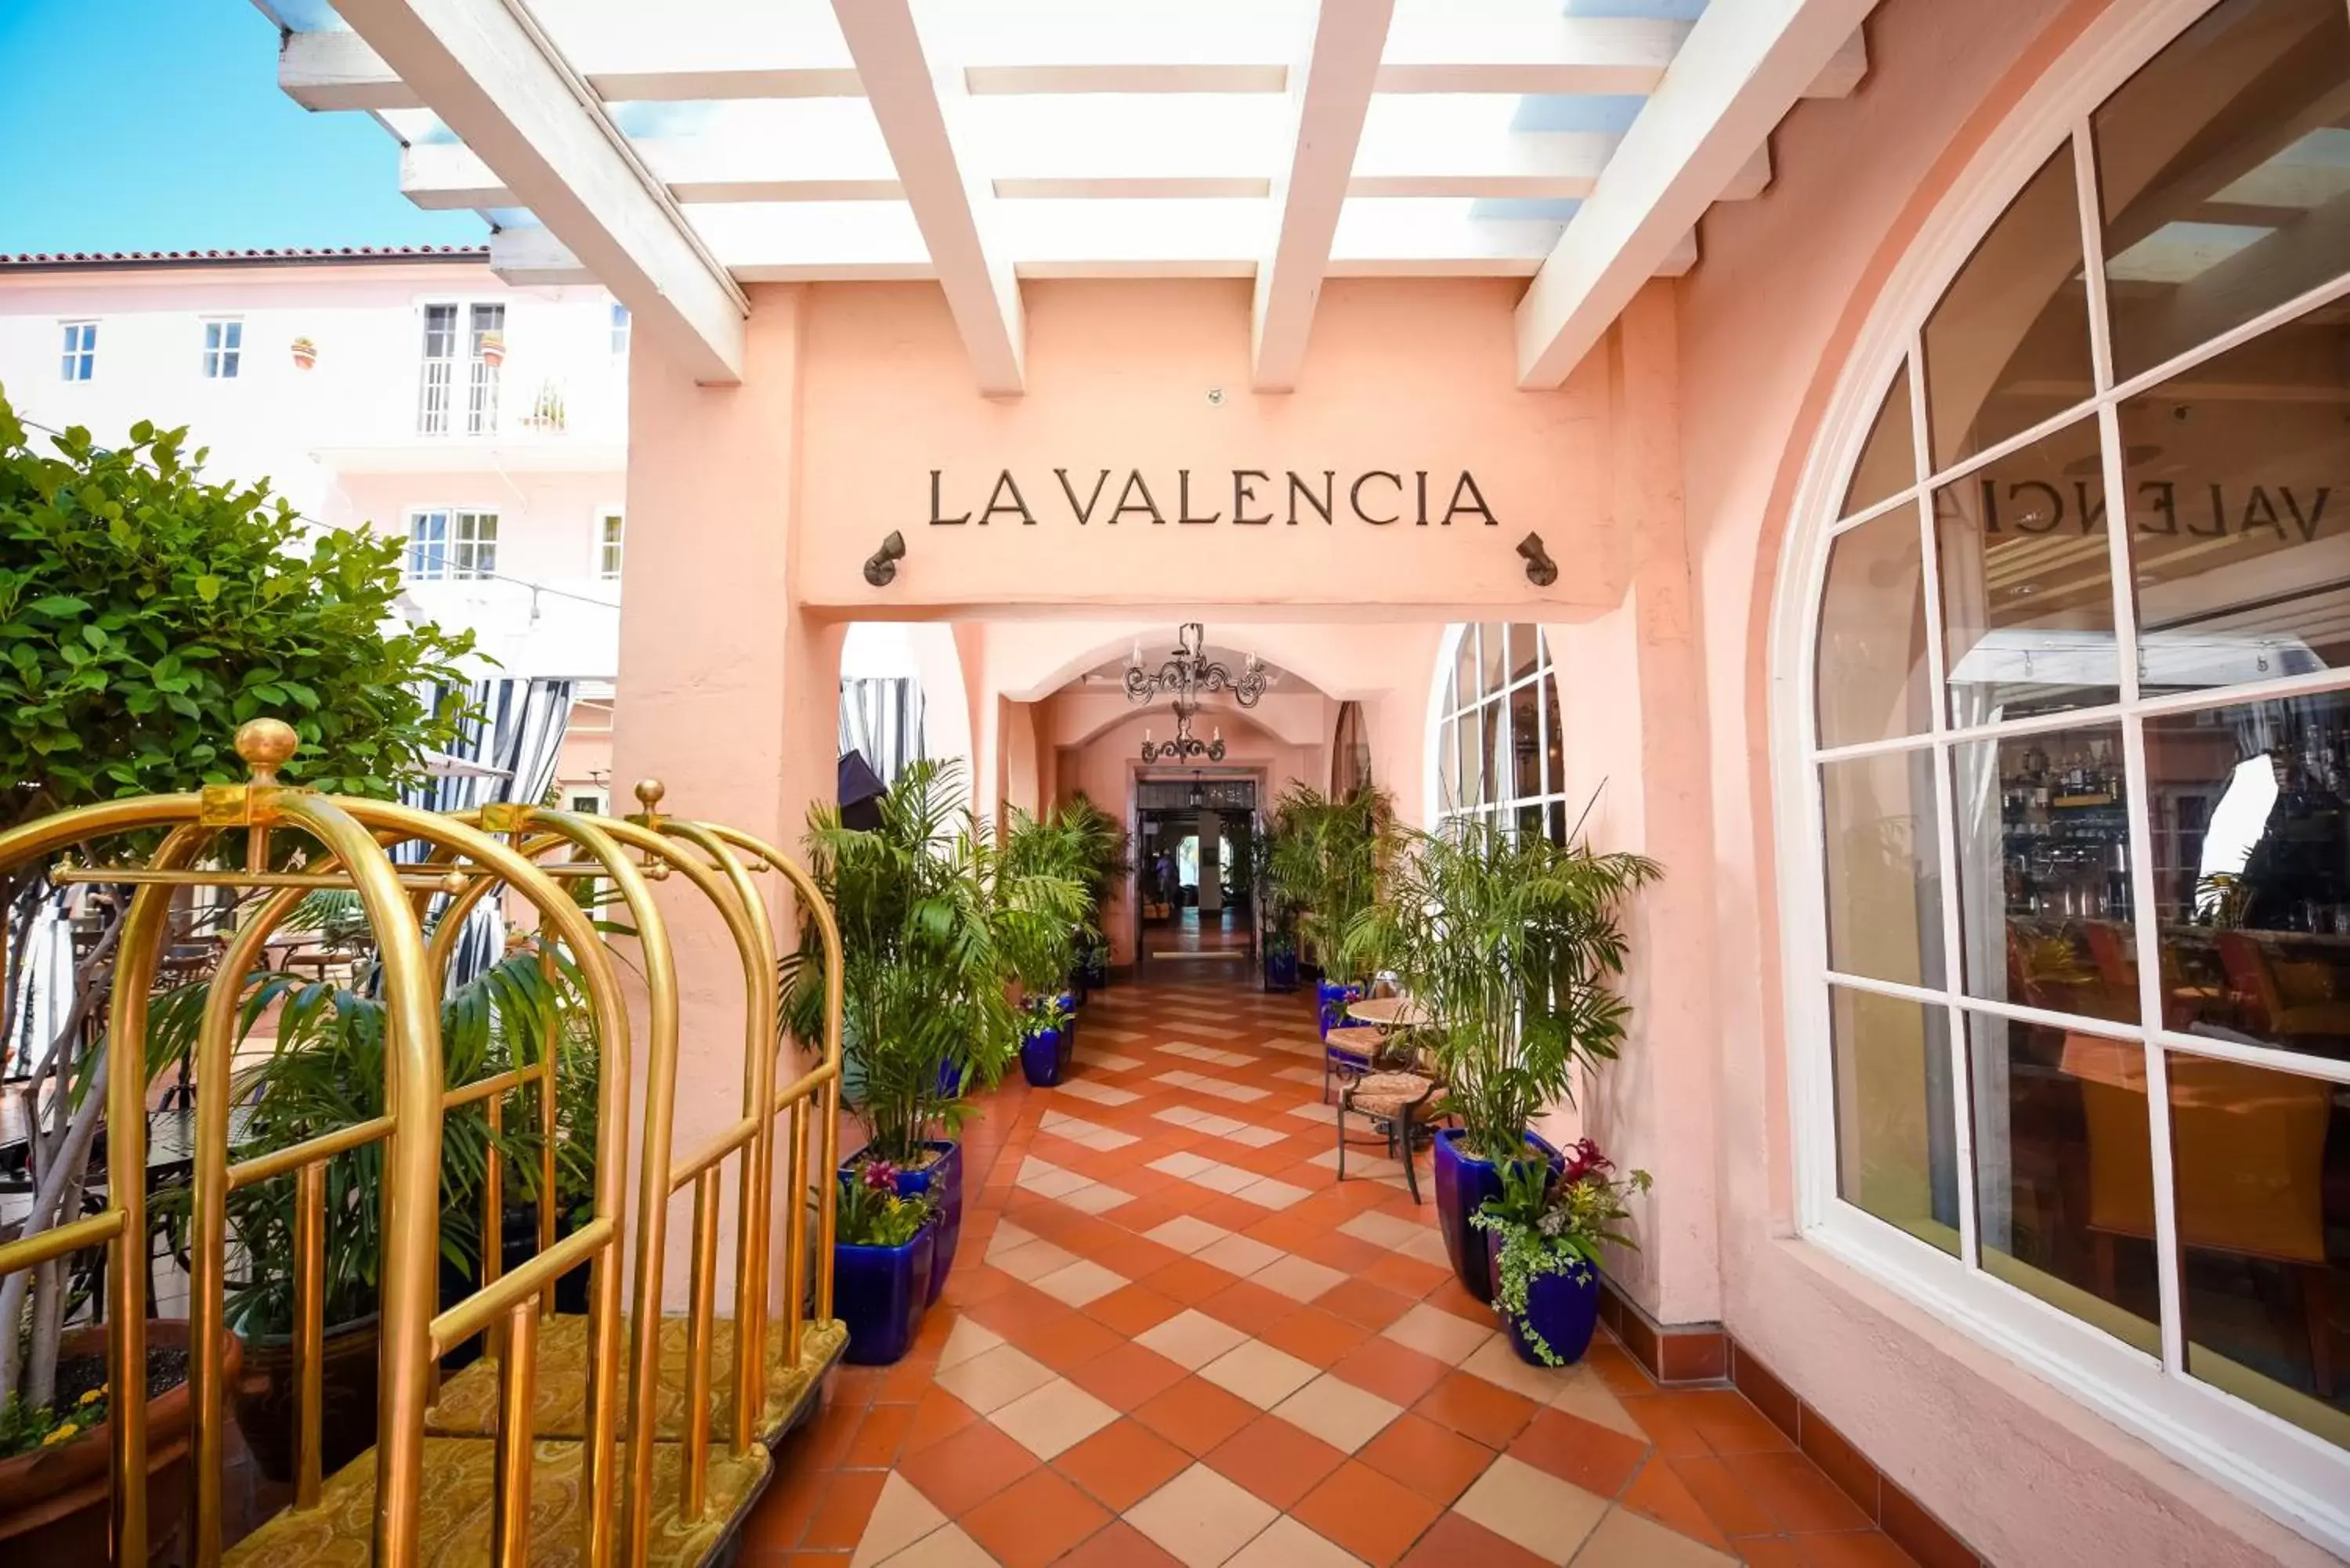 Facade/entrance in La Valencia Hotel